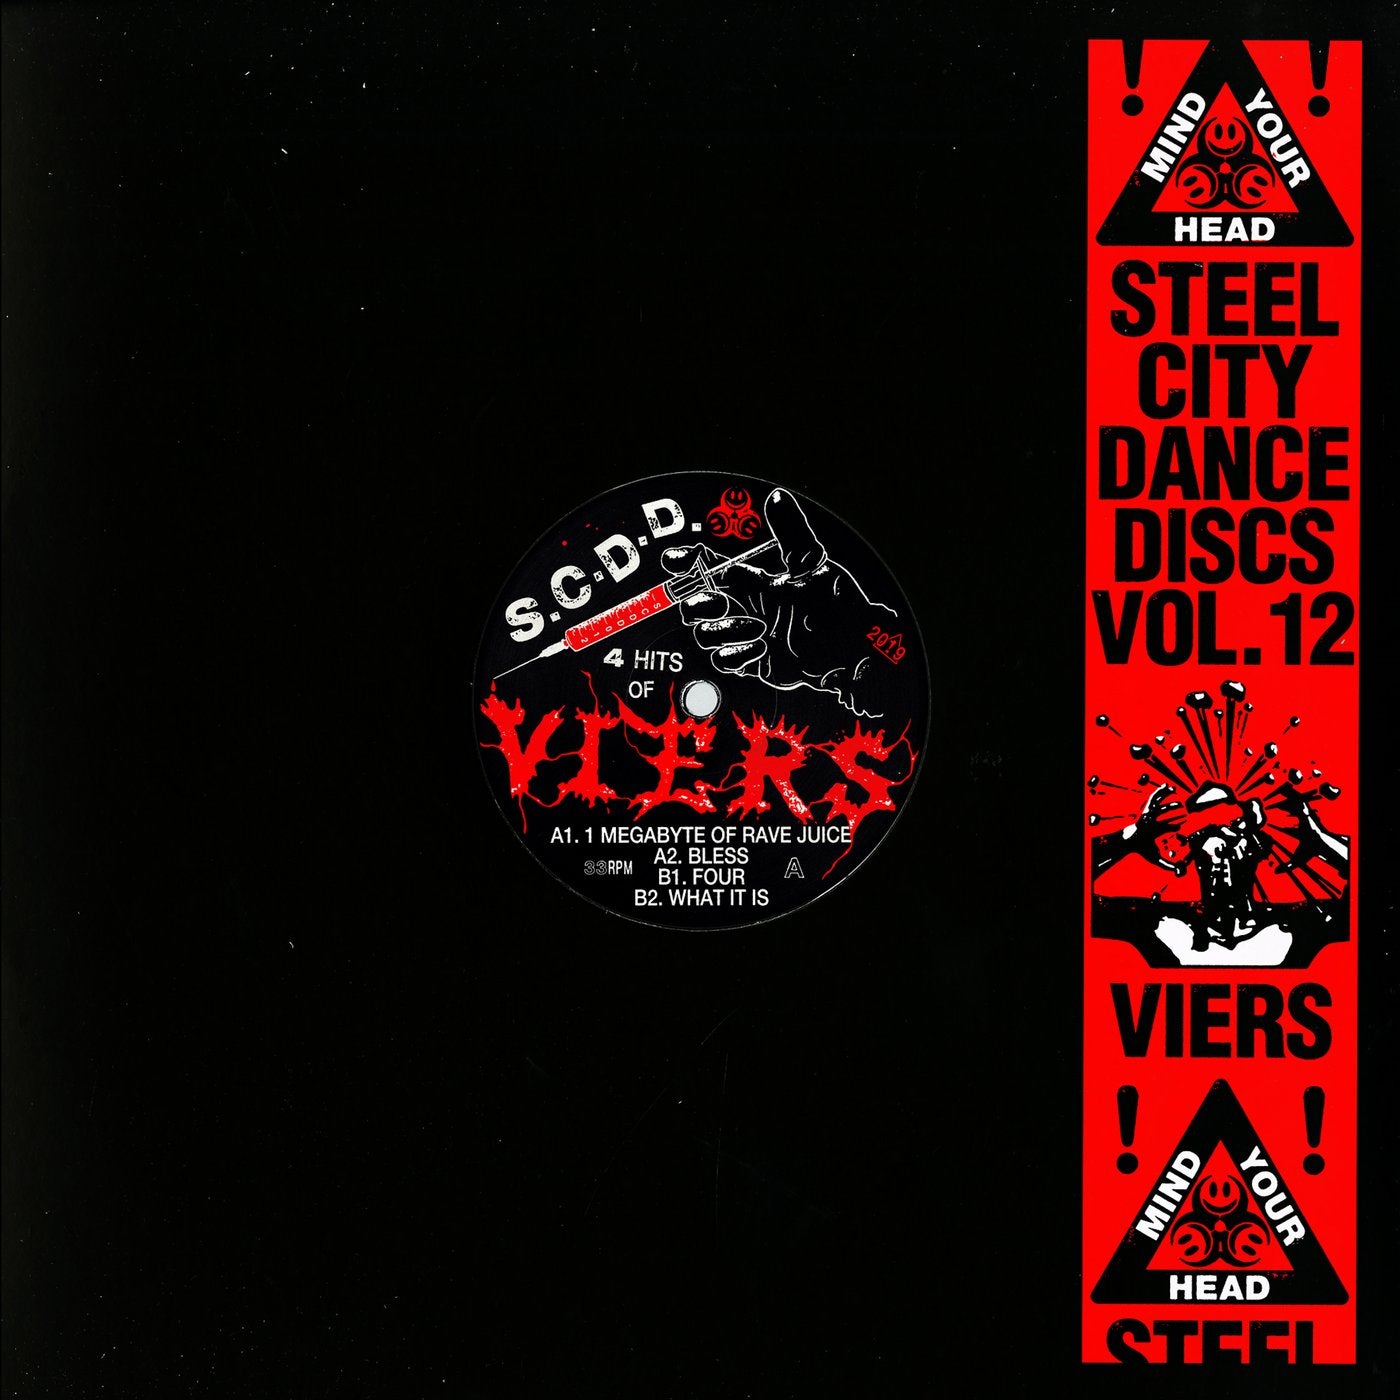 Steel City Dance Discs Volume 12